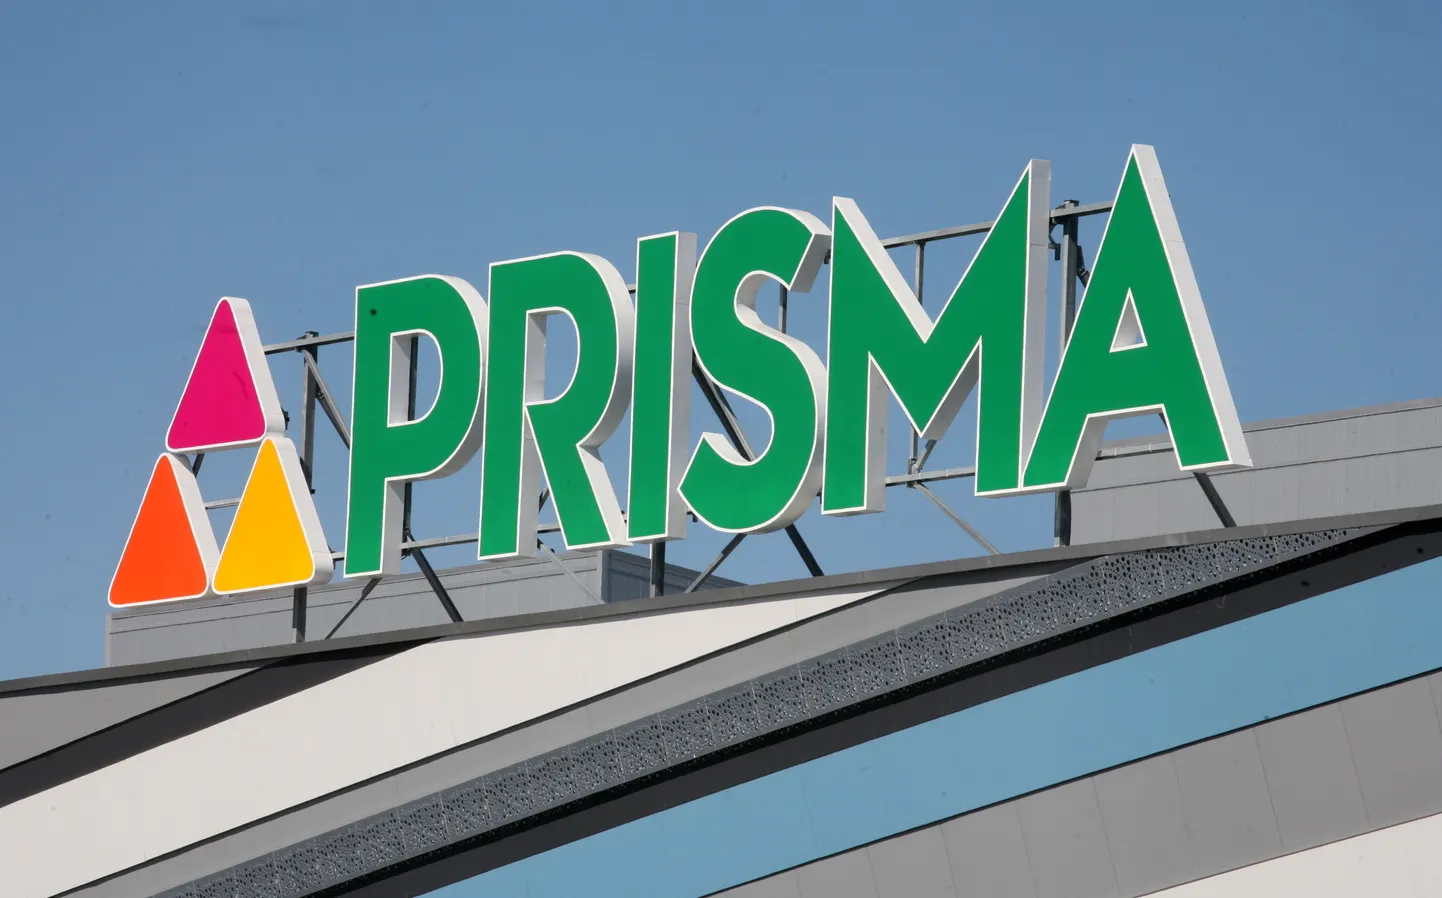 Lielveikala "Prisma" logo.